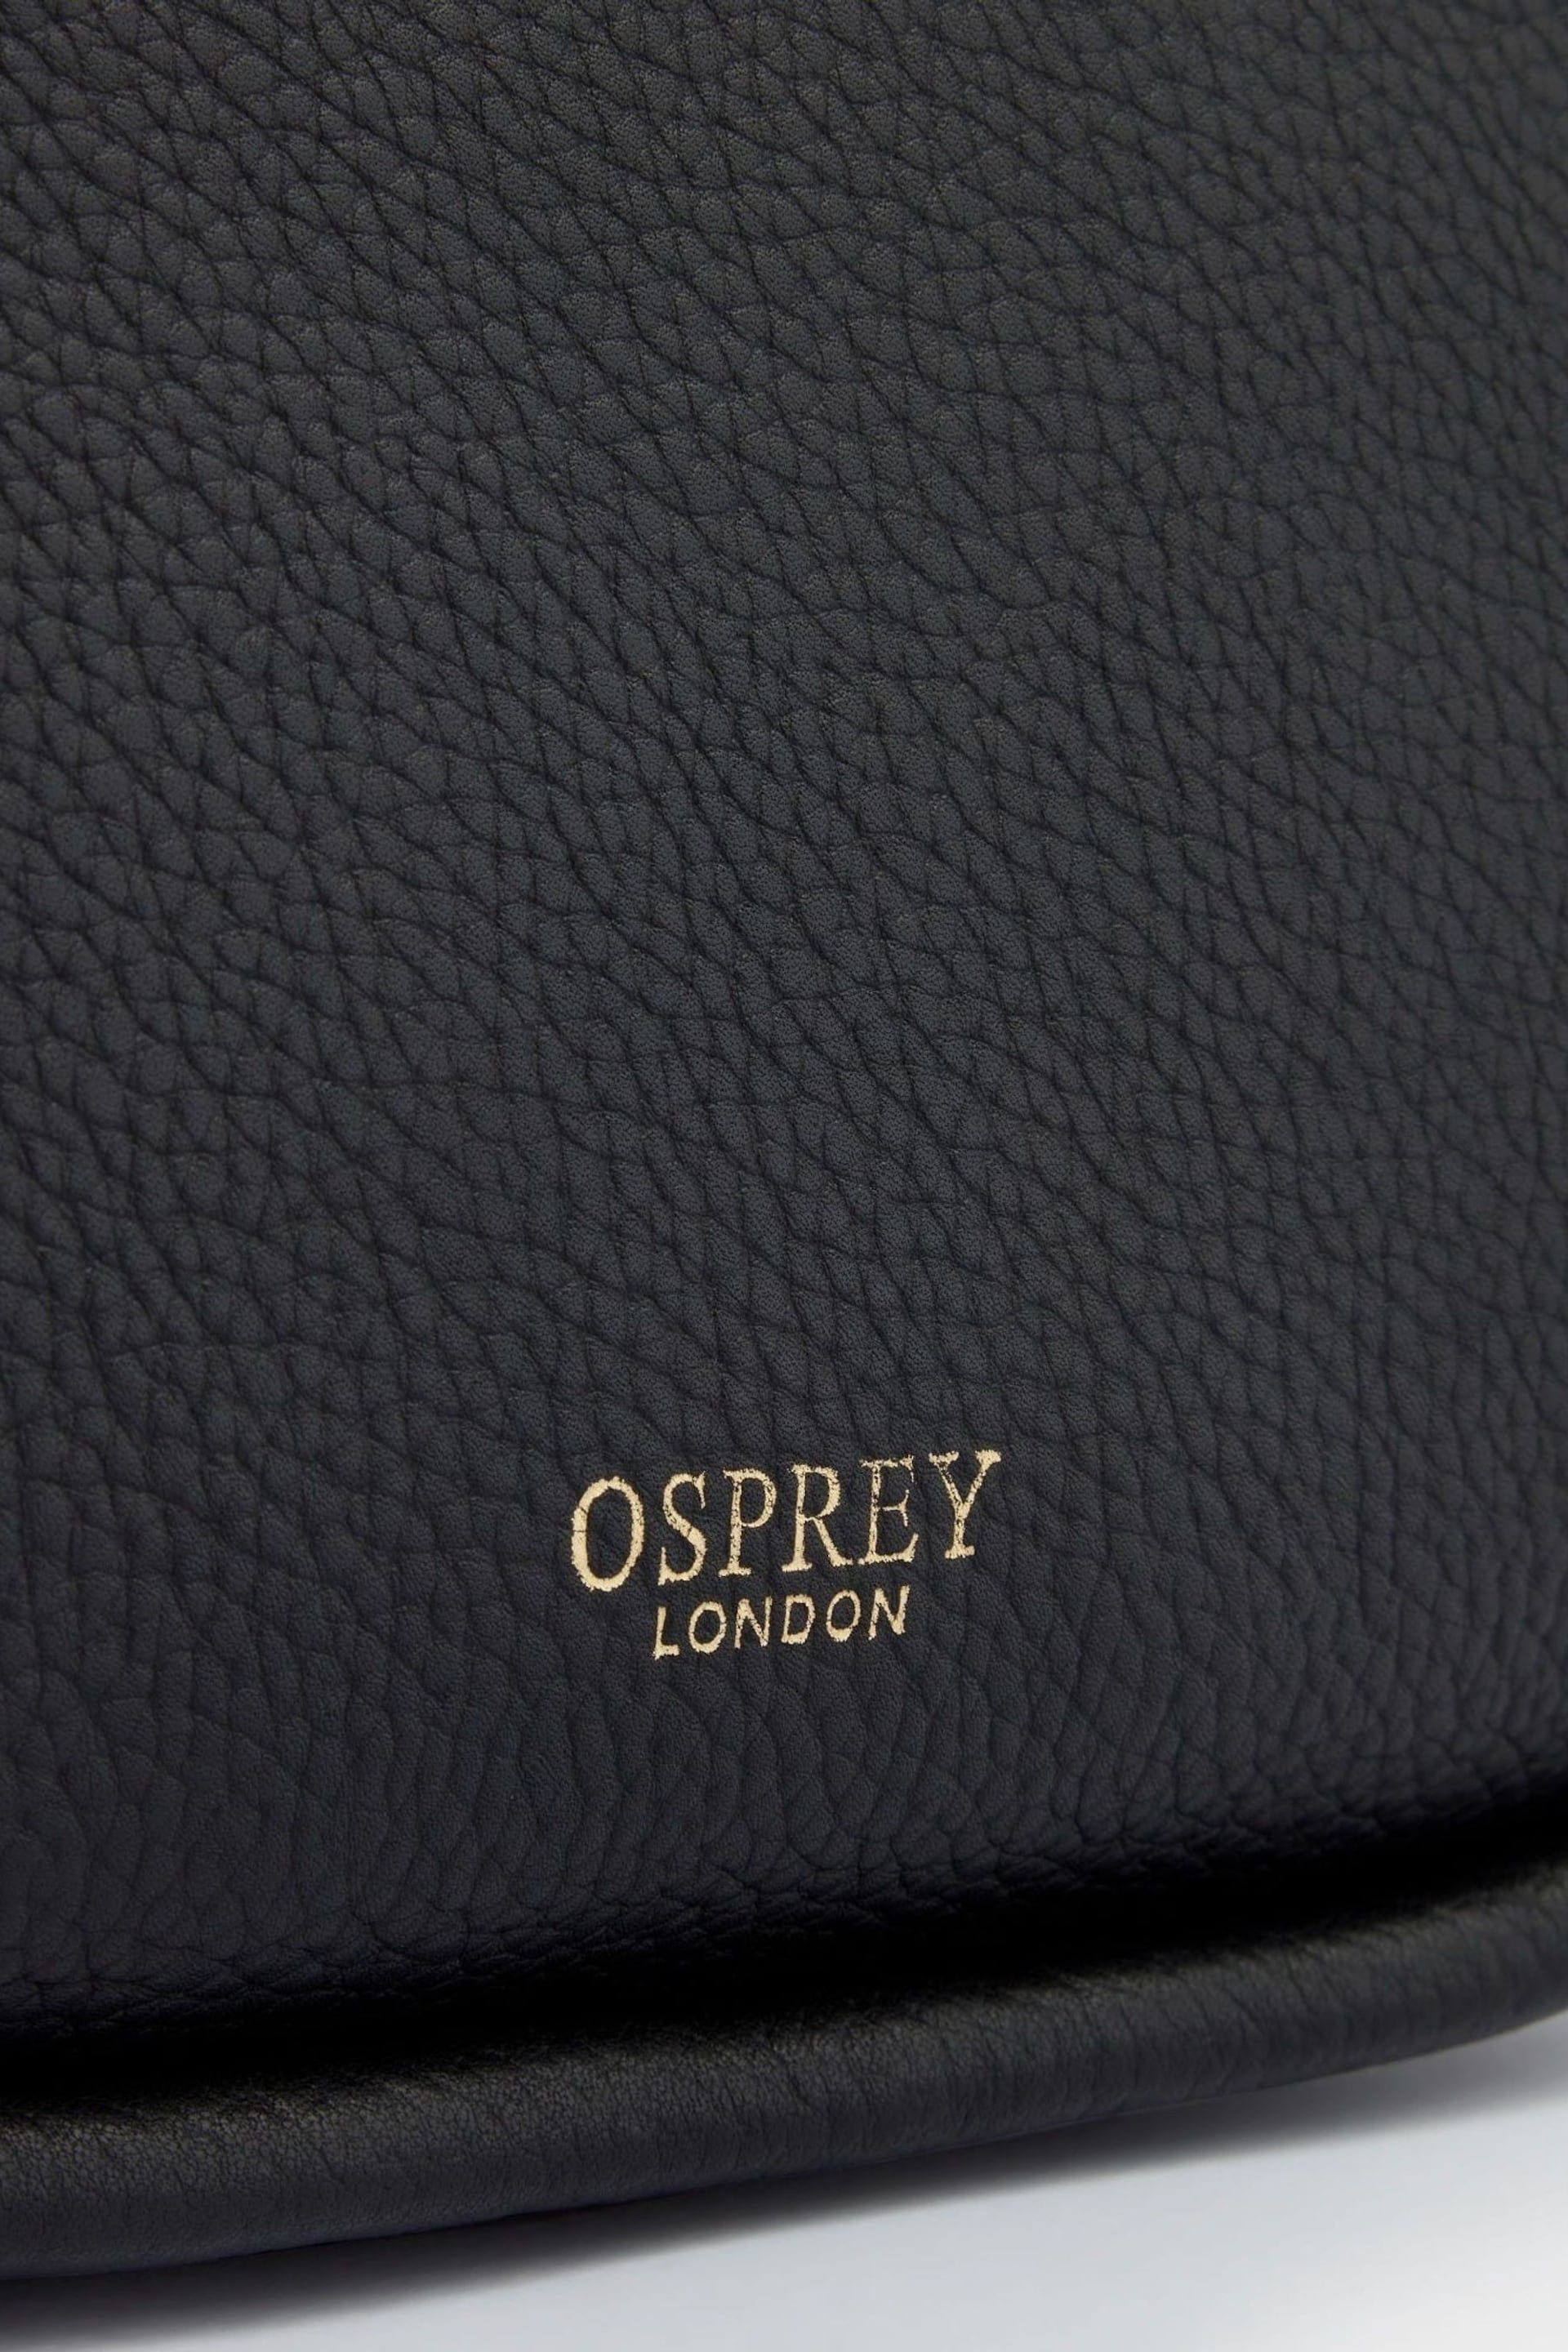 OSPREY LONDON The Hendrix Leather Shoulder Bag - Image 6 of 6